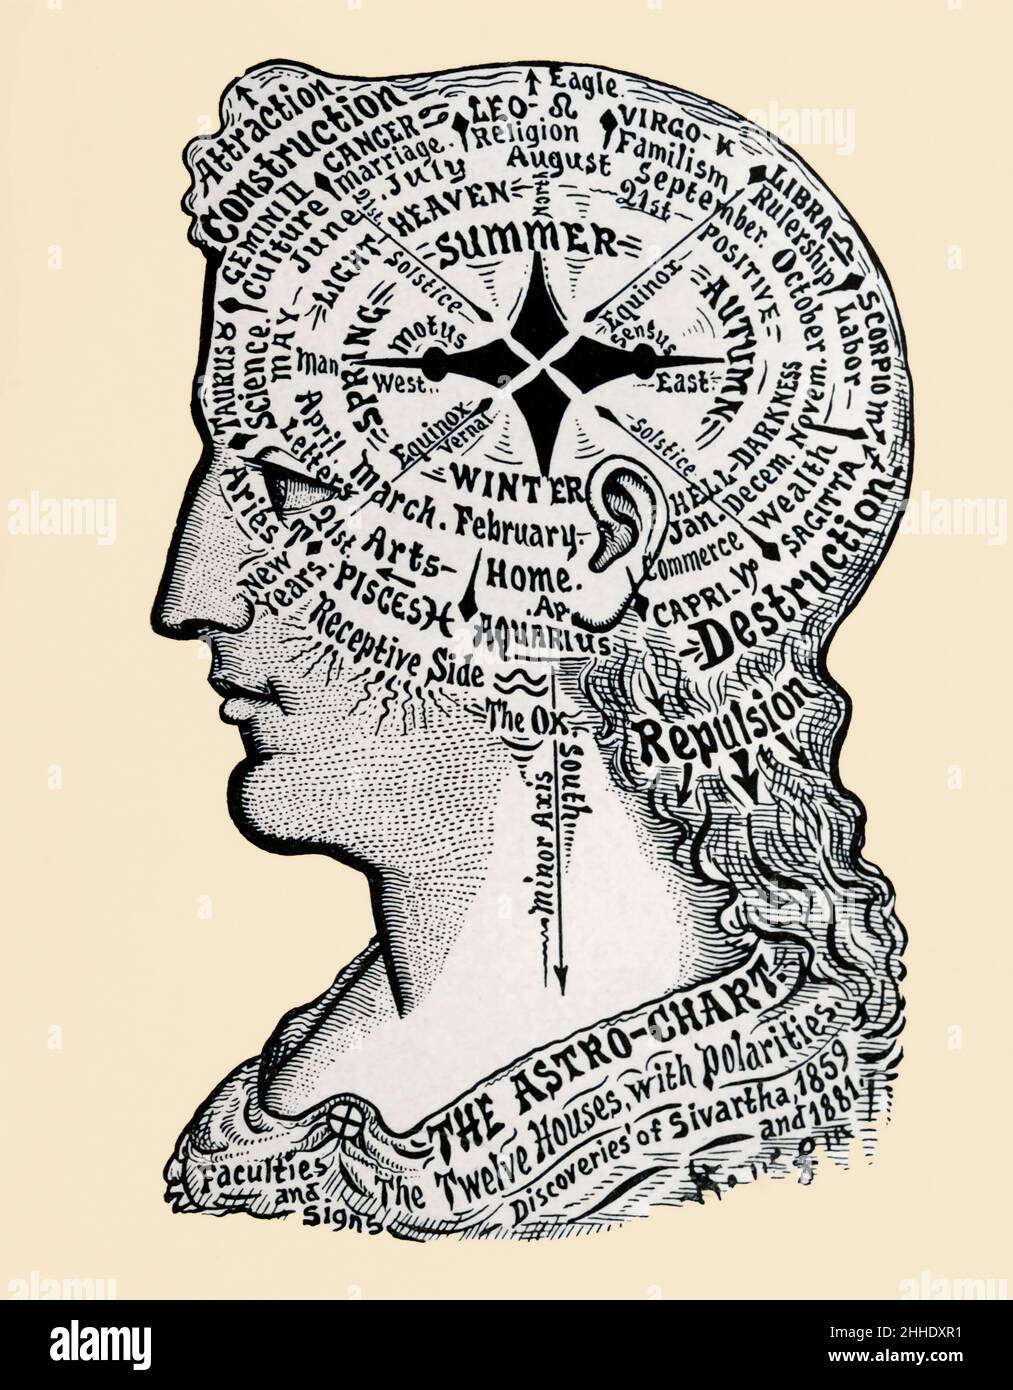 Ein Horoskop des menschlichen Kopfes und der menschlichen Schultern. Es zeigt phrenologische, astrologische, saisonale und emotionale Bereiche. Stockfoto